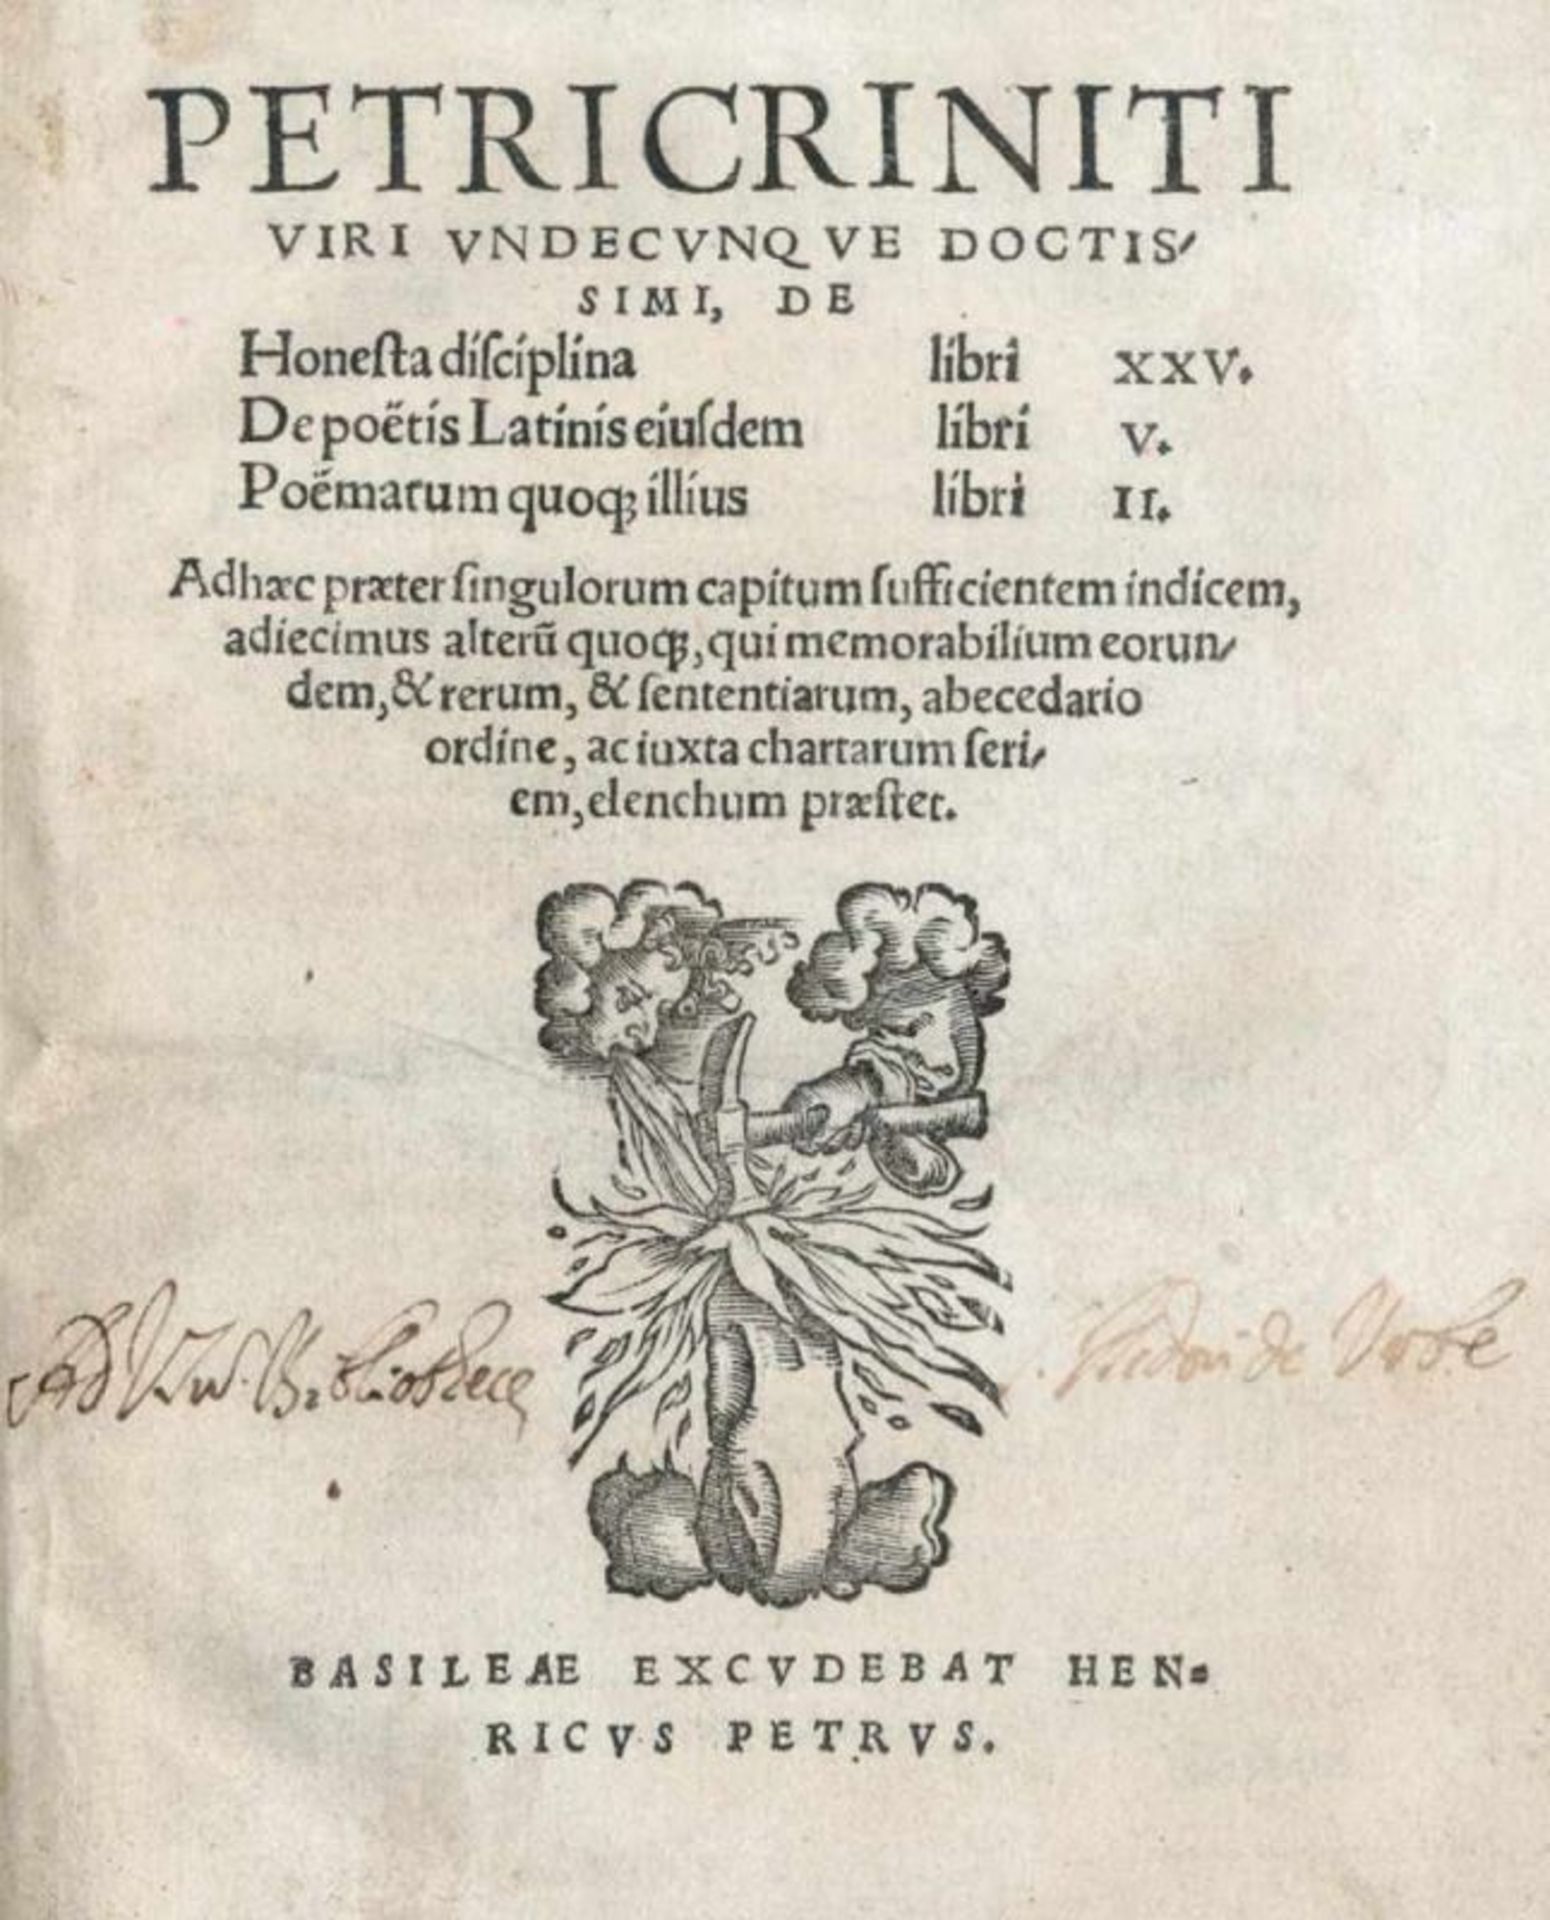 Crinitus,P.De honesta disciplina libri XXV. De poetis latinis eiusdem libri V. Poemarum quoque